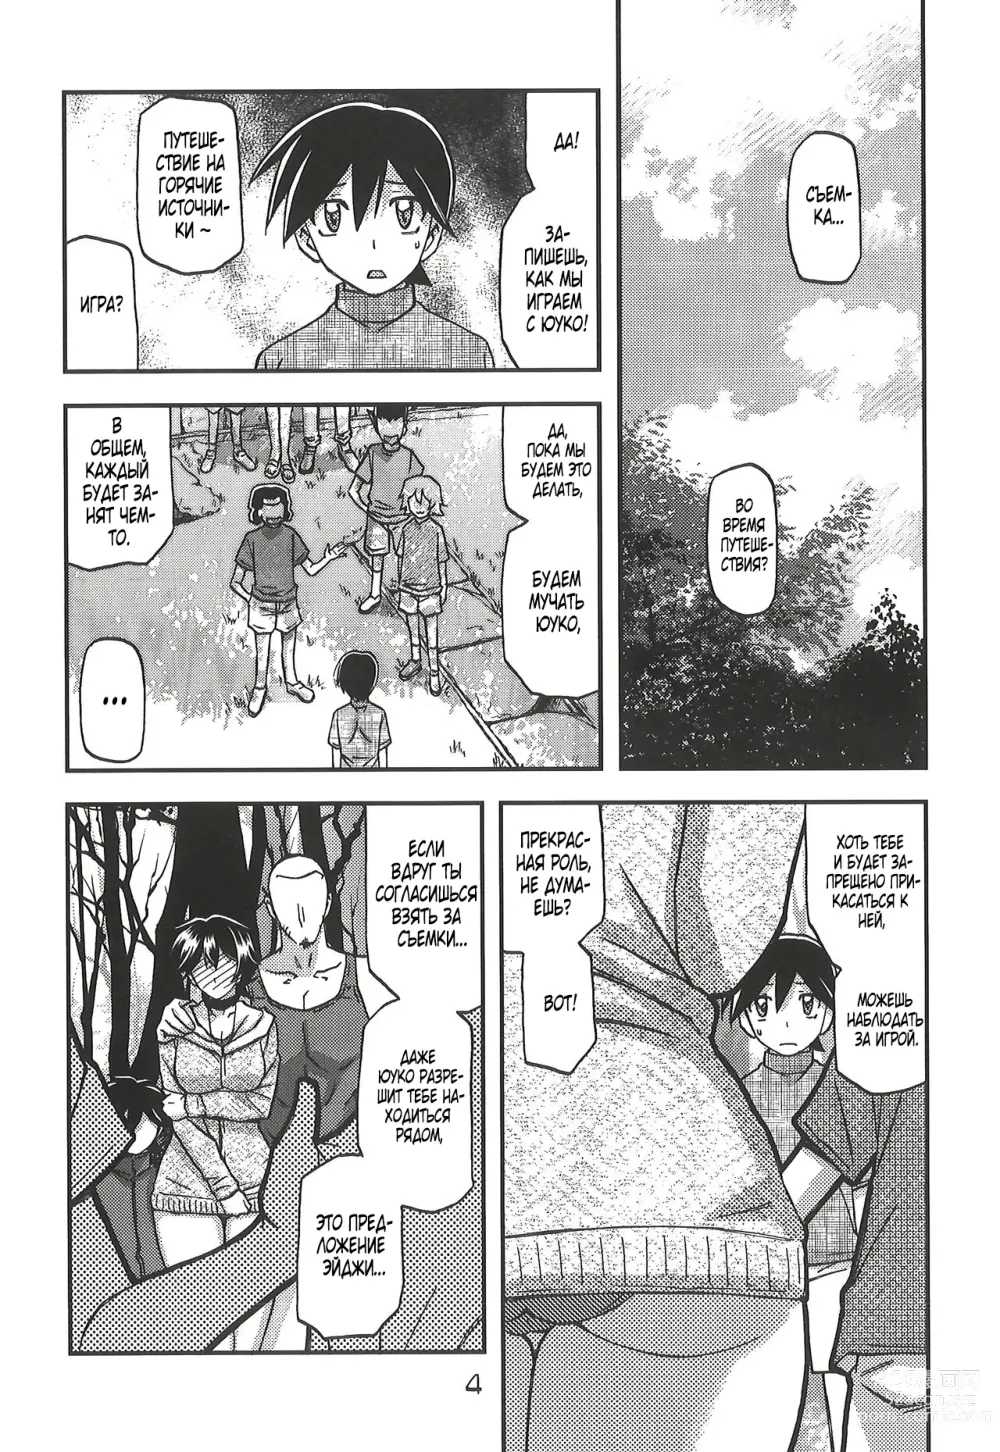 Page 5 of doujinshi Akebi no Mi - Yuuko CONTINUATION